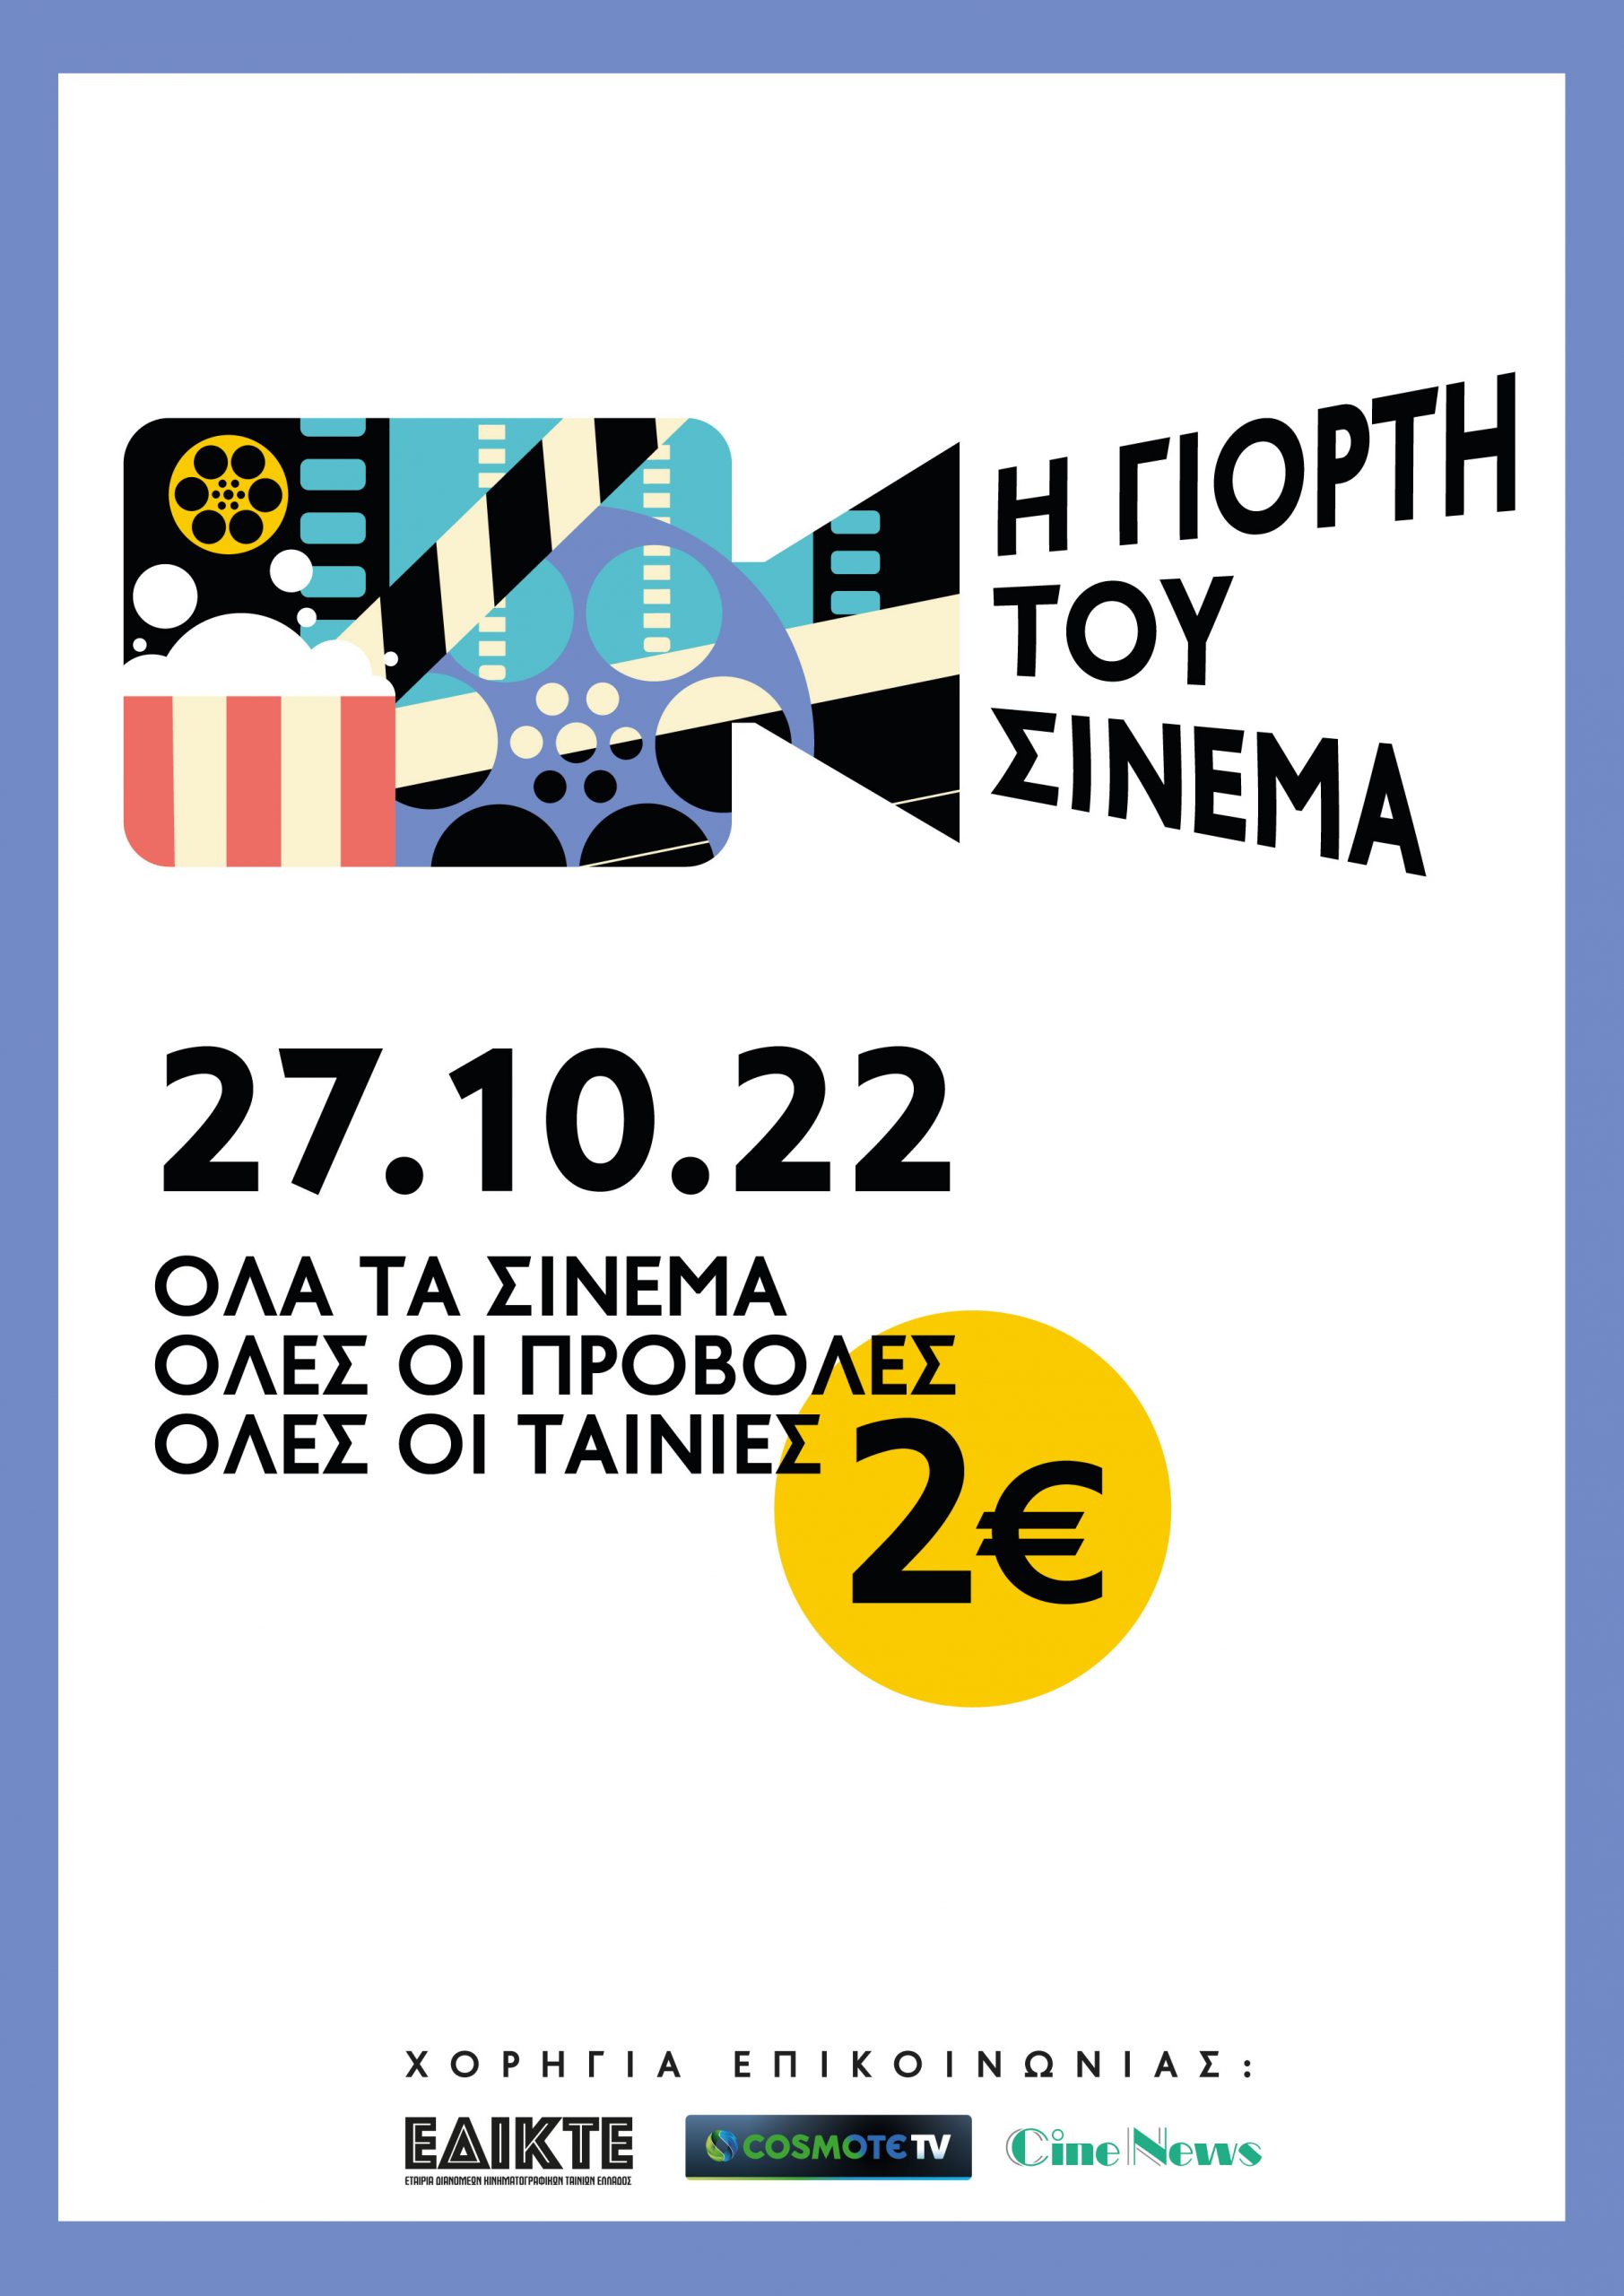 Η Γιορτή του Σινεμά: Στις 27 Οκτωβρίου 2022 όλα τα σινεμά με 2 ευρώ το άτομο